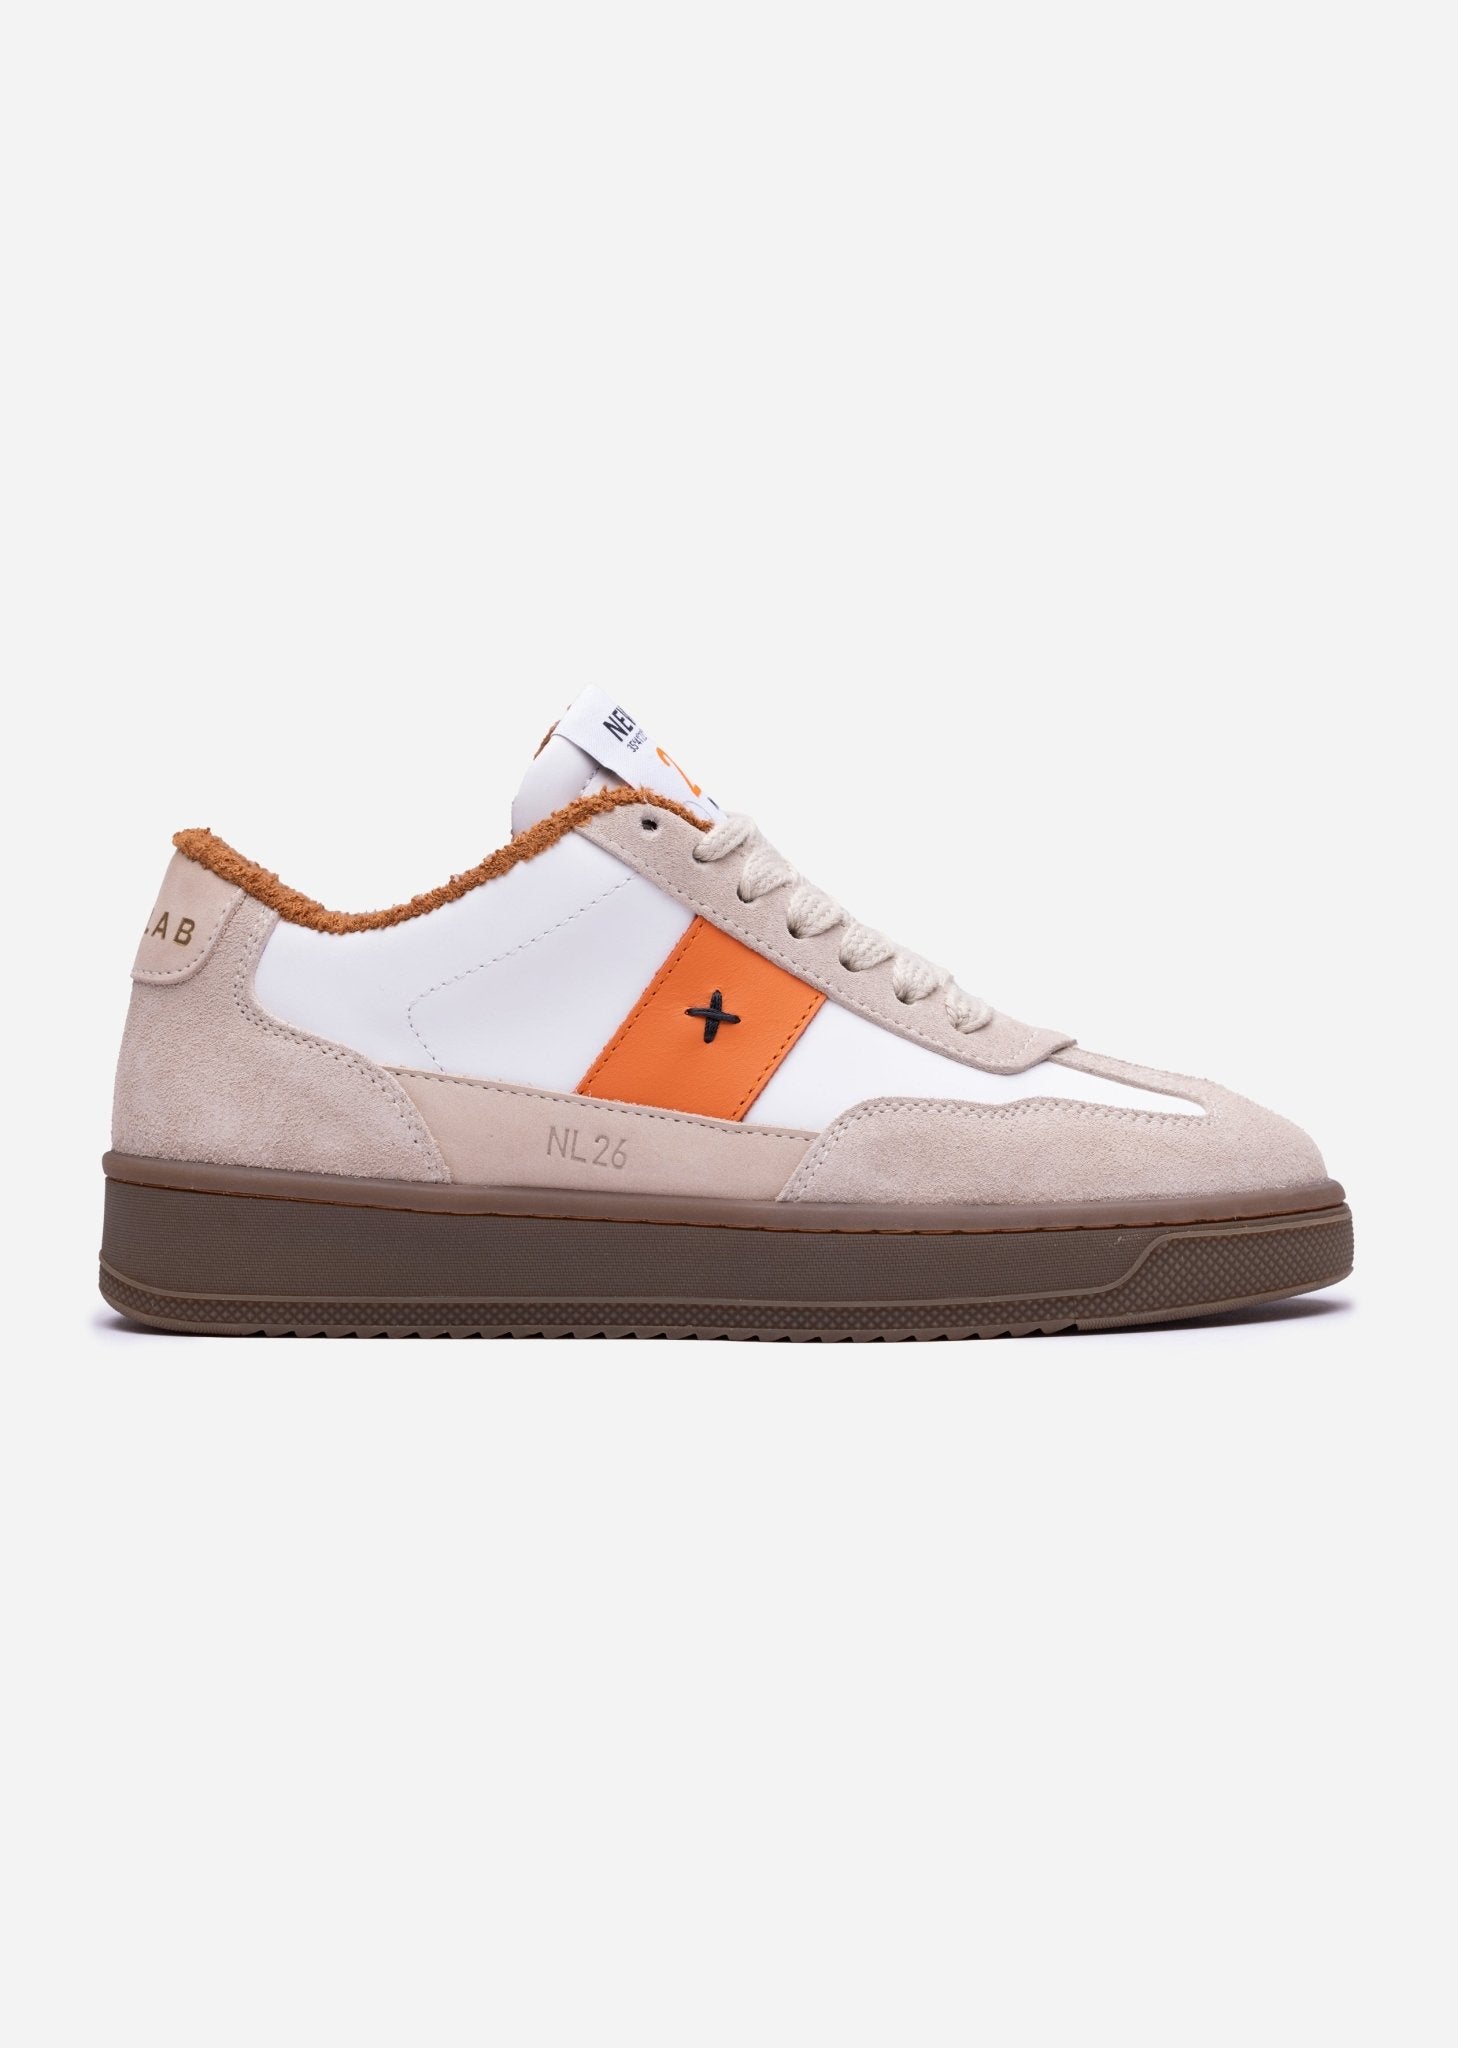 NL26 White/Beige/Orange - NEWLAB - Chaussures - NEWLAB